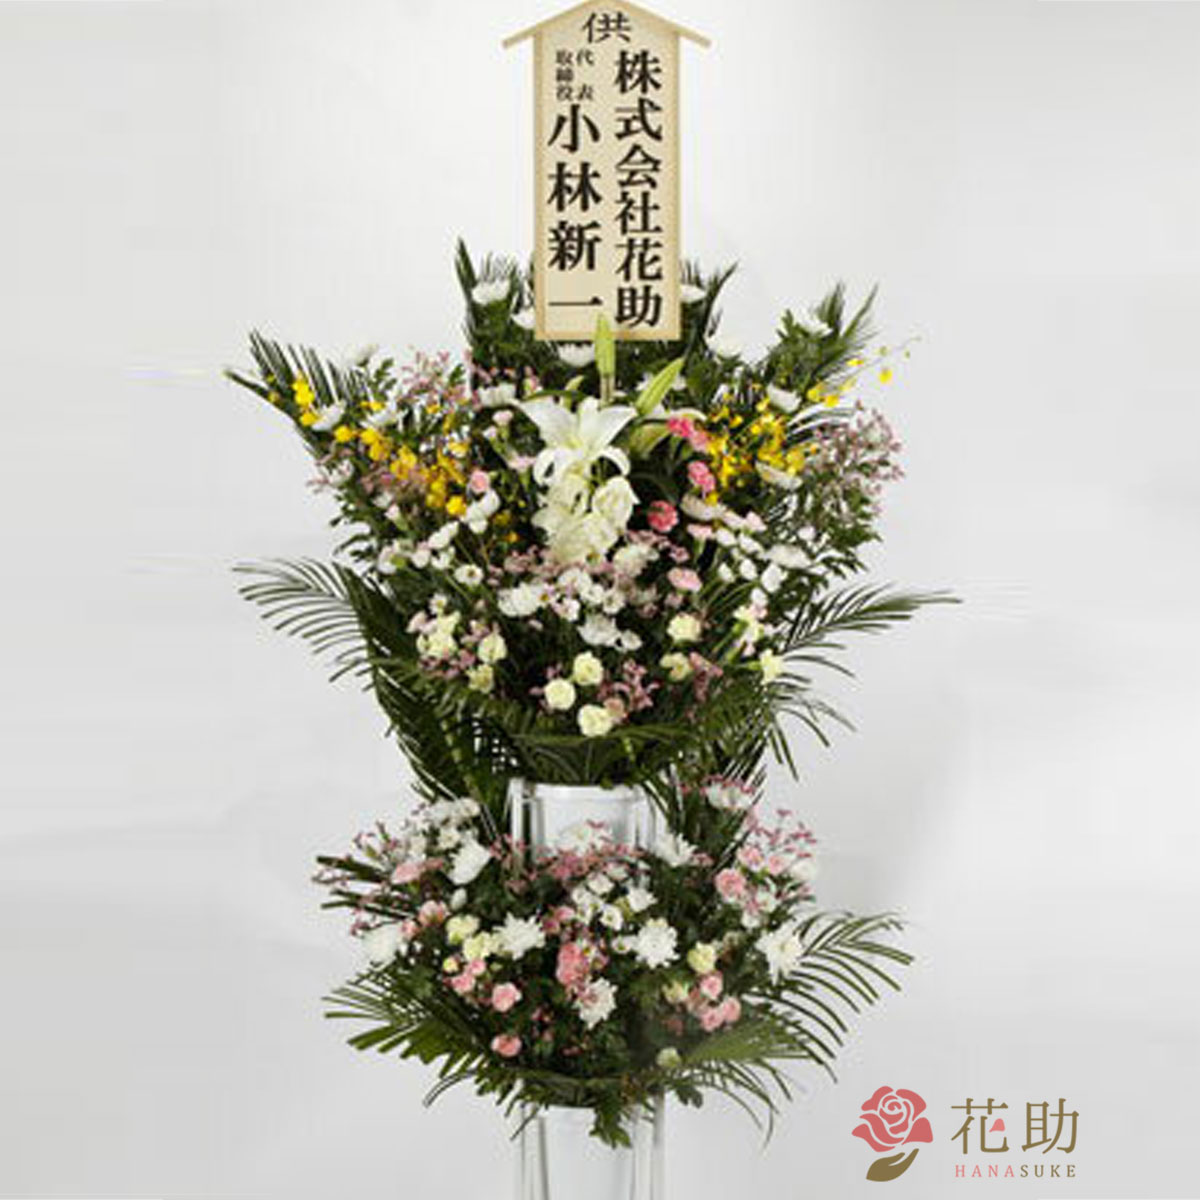 通夜 葬儀 告別式に贈る 花助の葬儀用スタンド花 000円